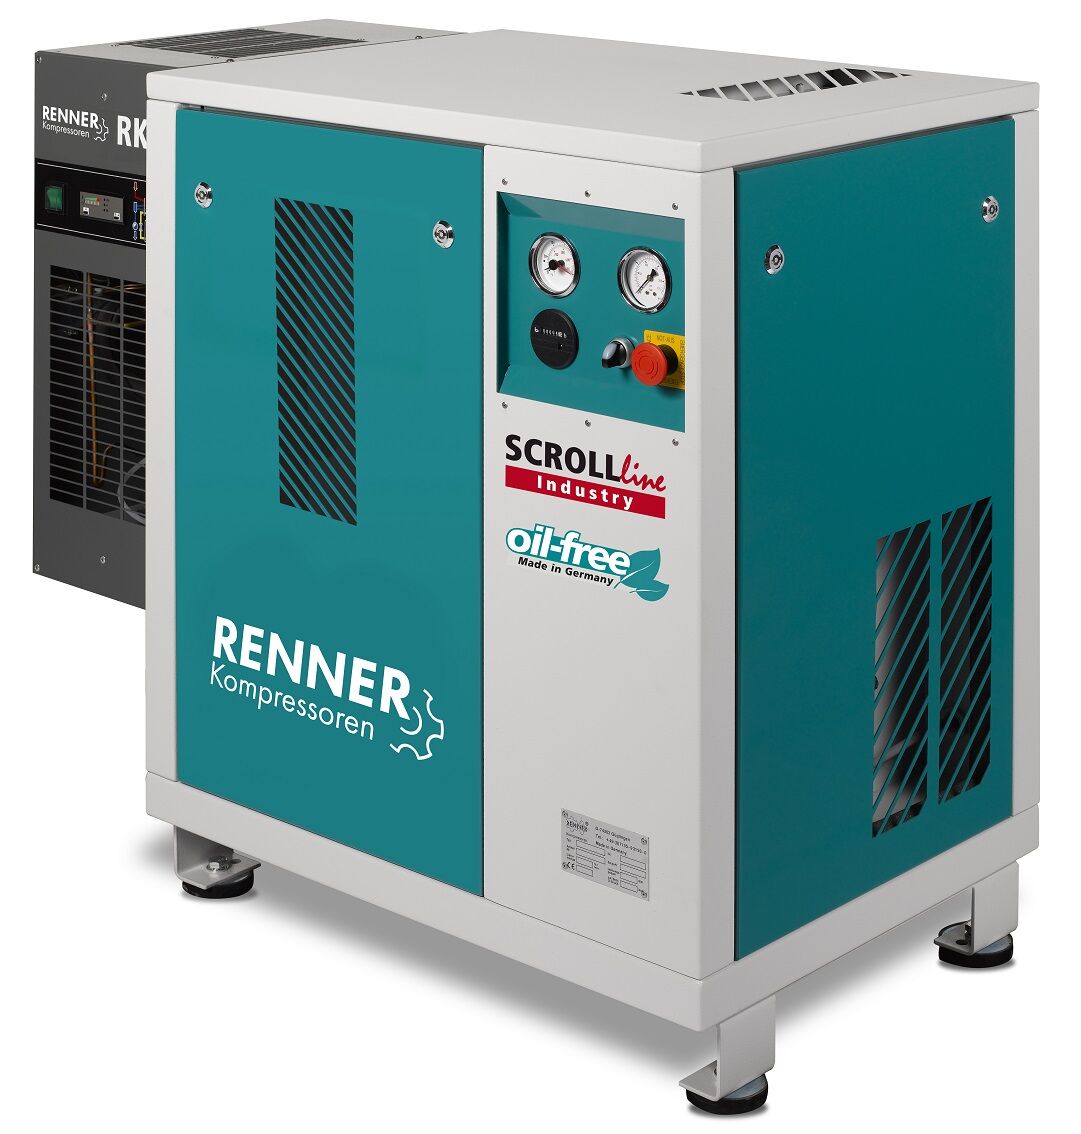 RENNER-Kompressor SLK-I 7,5 mit Kältetrockner - Industry ölfreier Scrollkompressor